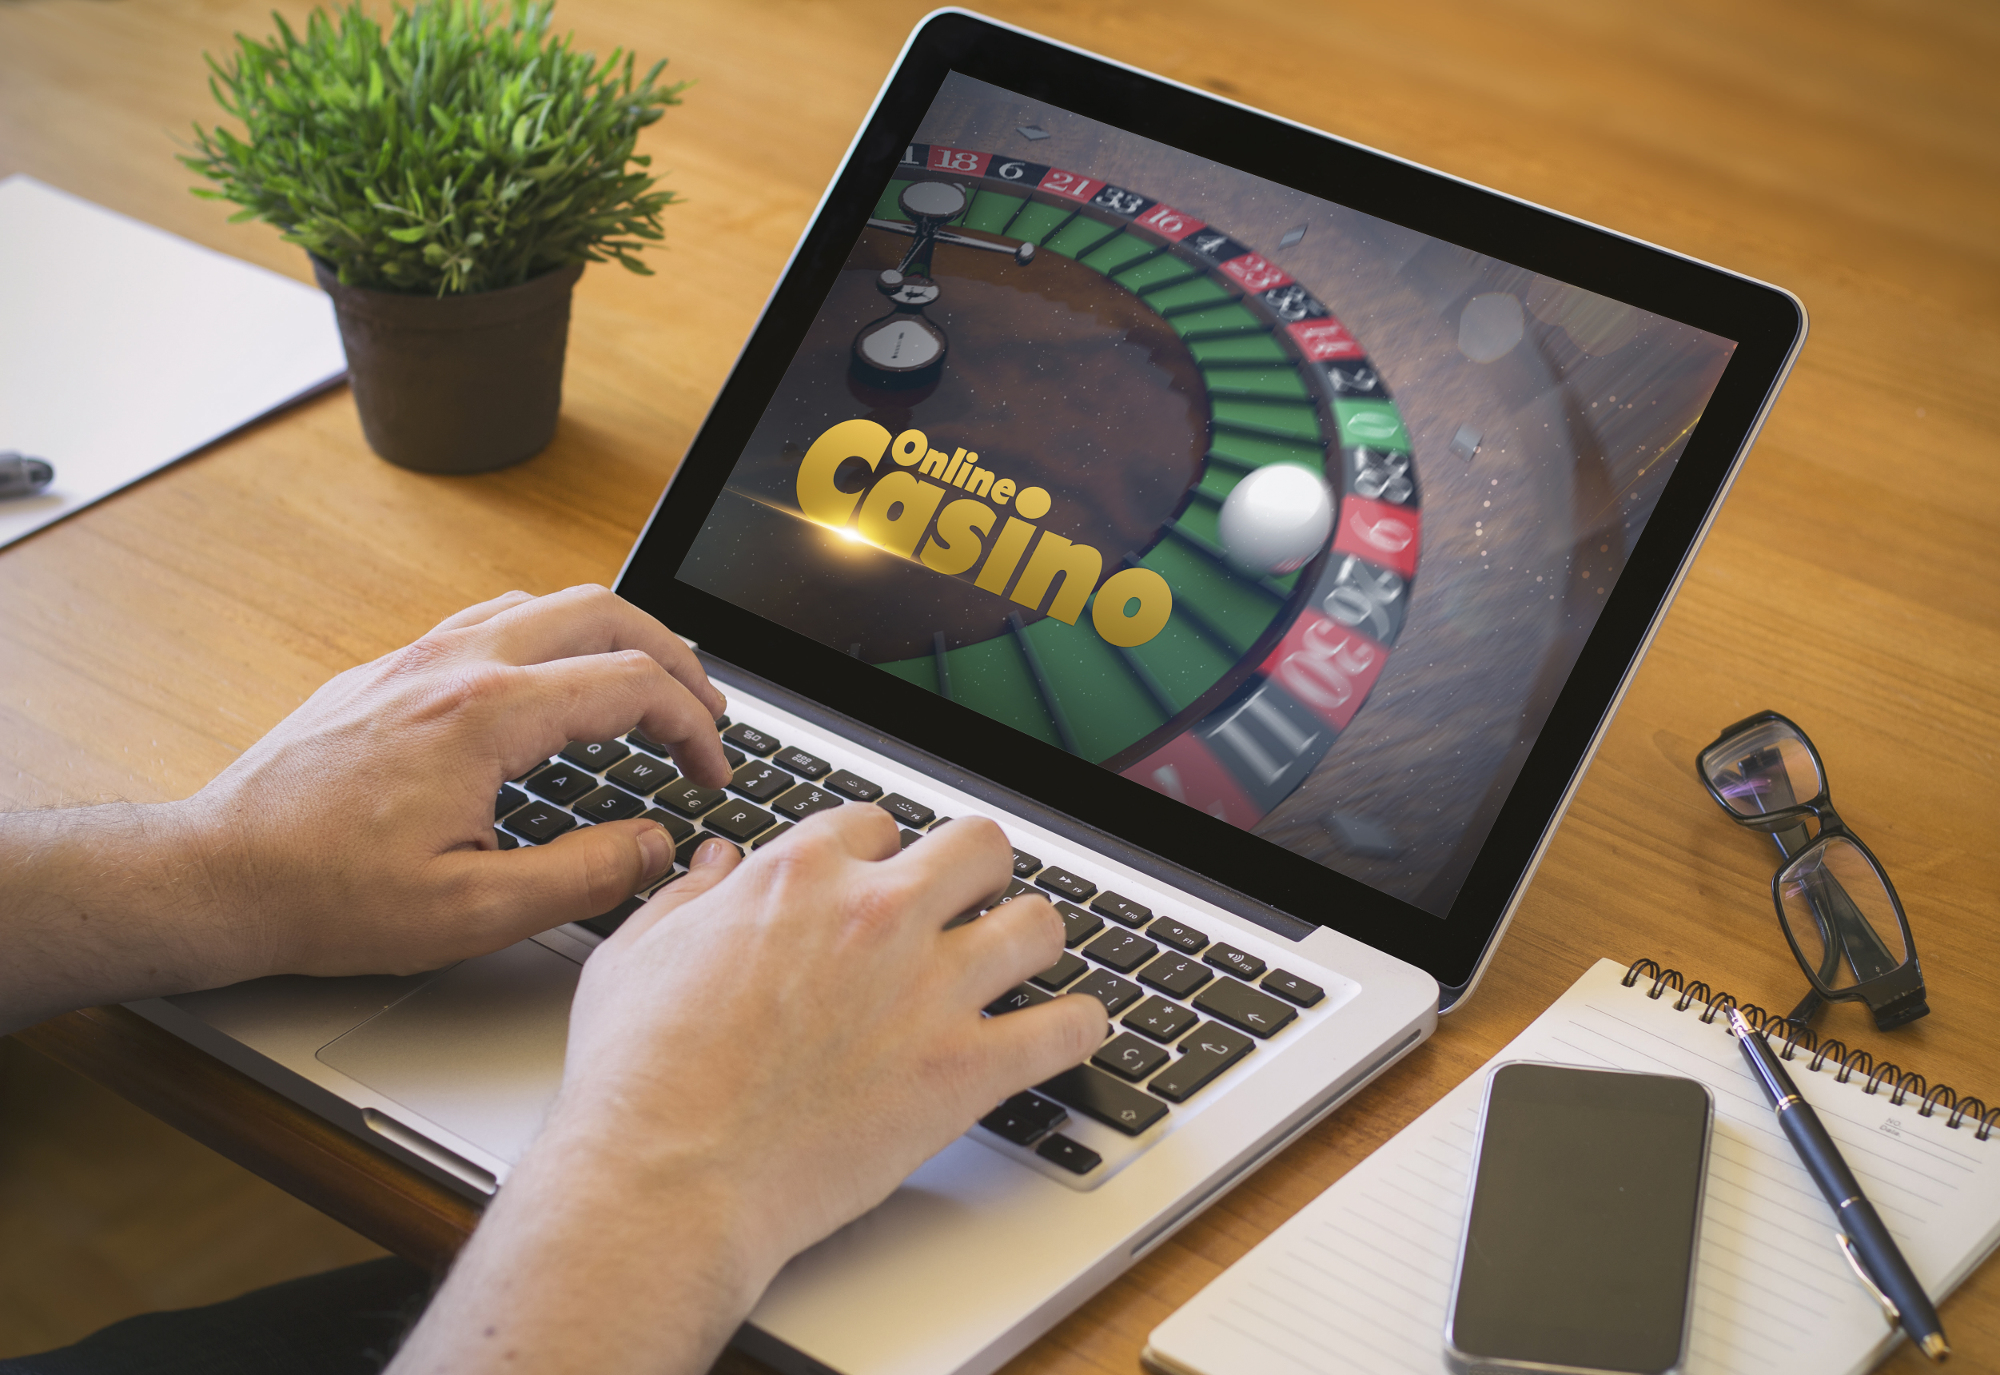 casinos online legais em portugal